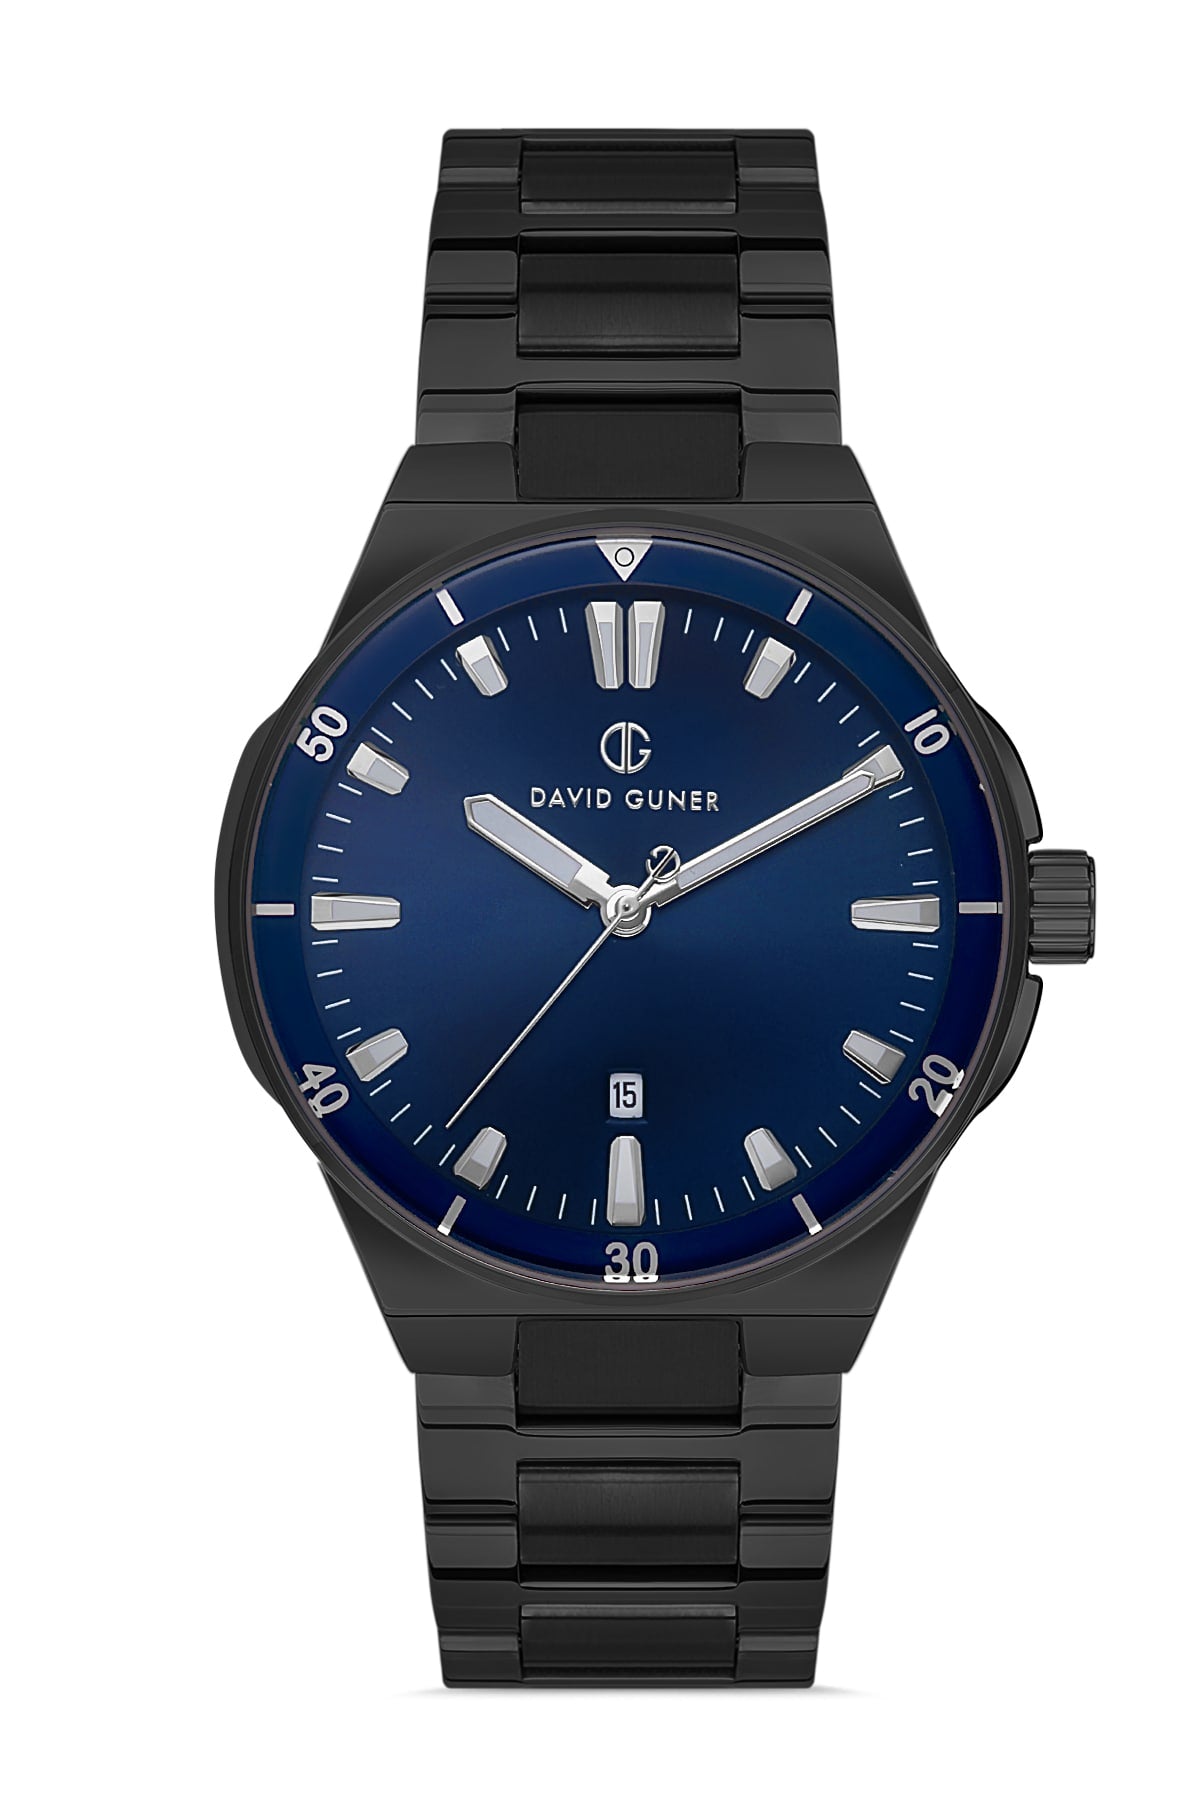 DAVID GUNER Men's Wristwatch with Dark Blue Dial and Black Strap Calendar